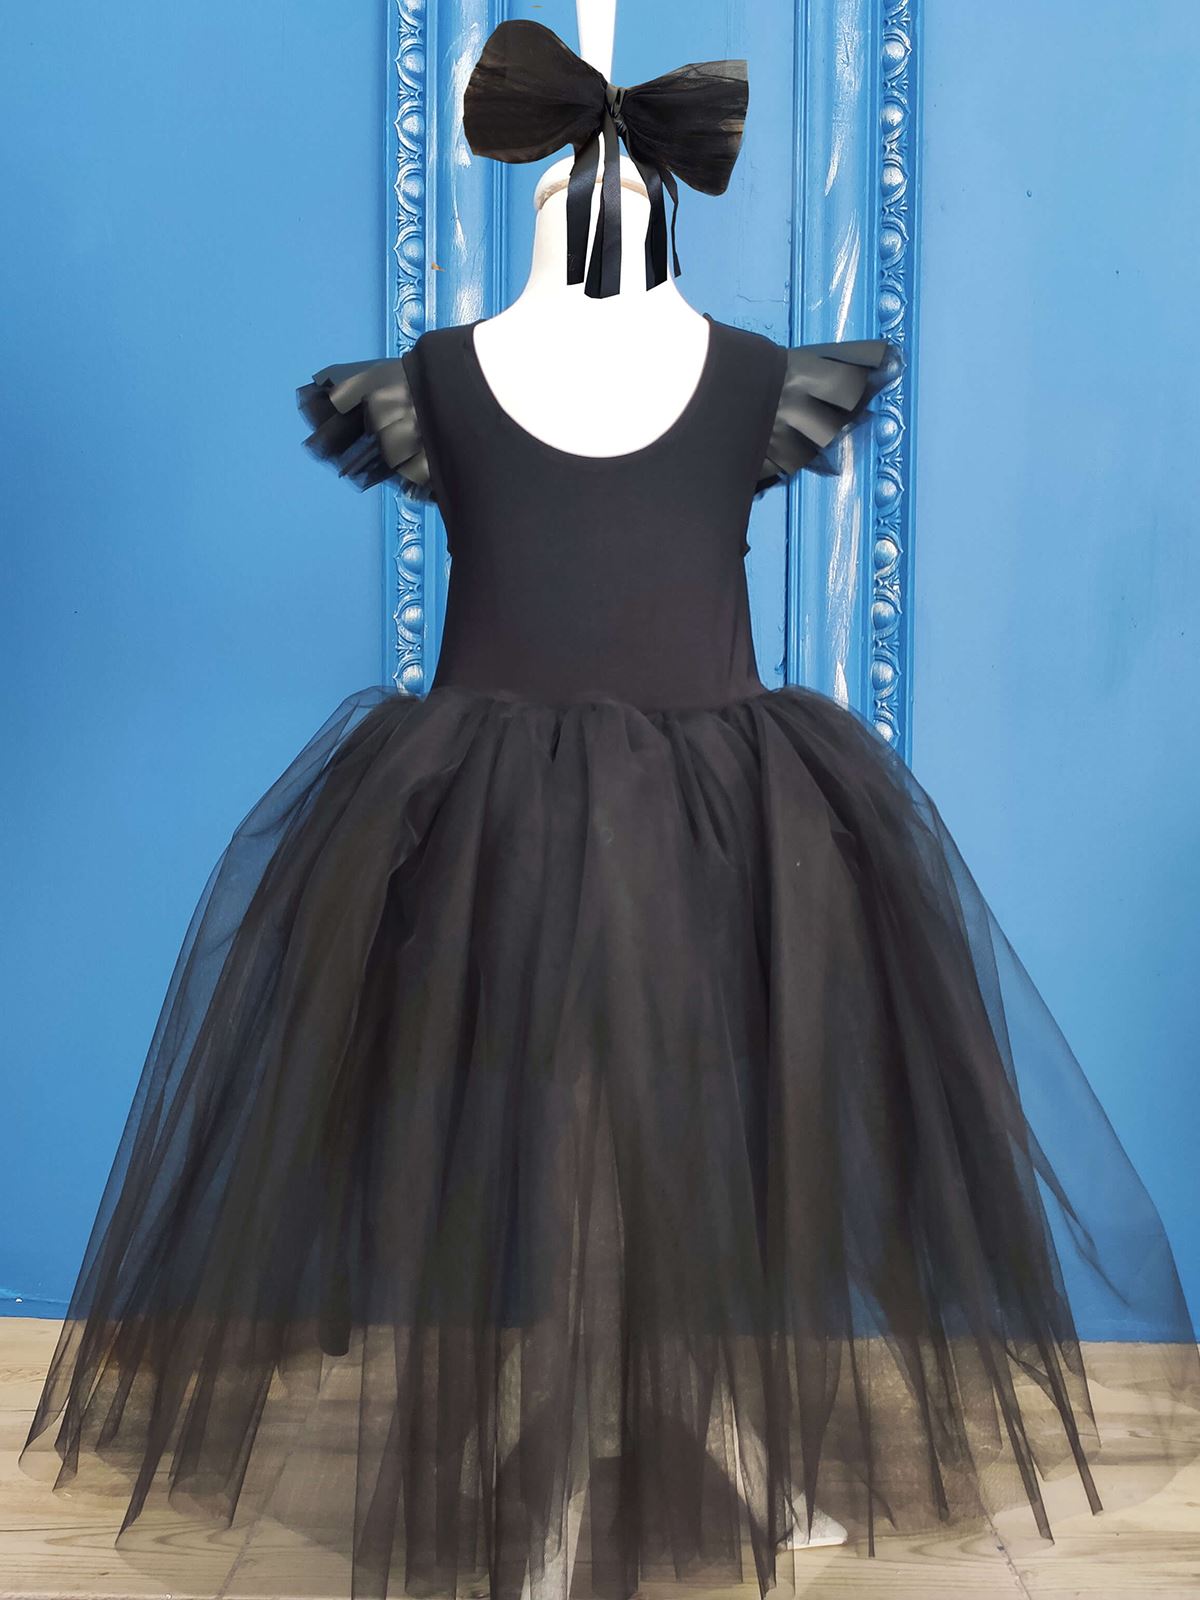 Shecco Babba Deri Detaylı Tütü Kız Çocuk Doğum Günü Elbisesi ve Bandana Takım, Çocuk Abiye Elbise 1-5 Yaş Abiye Siyah